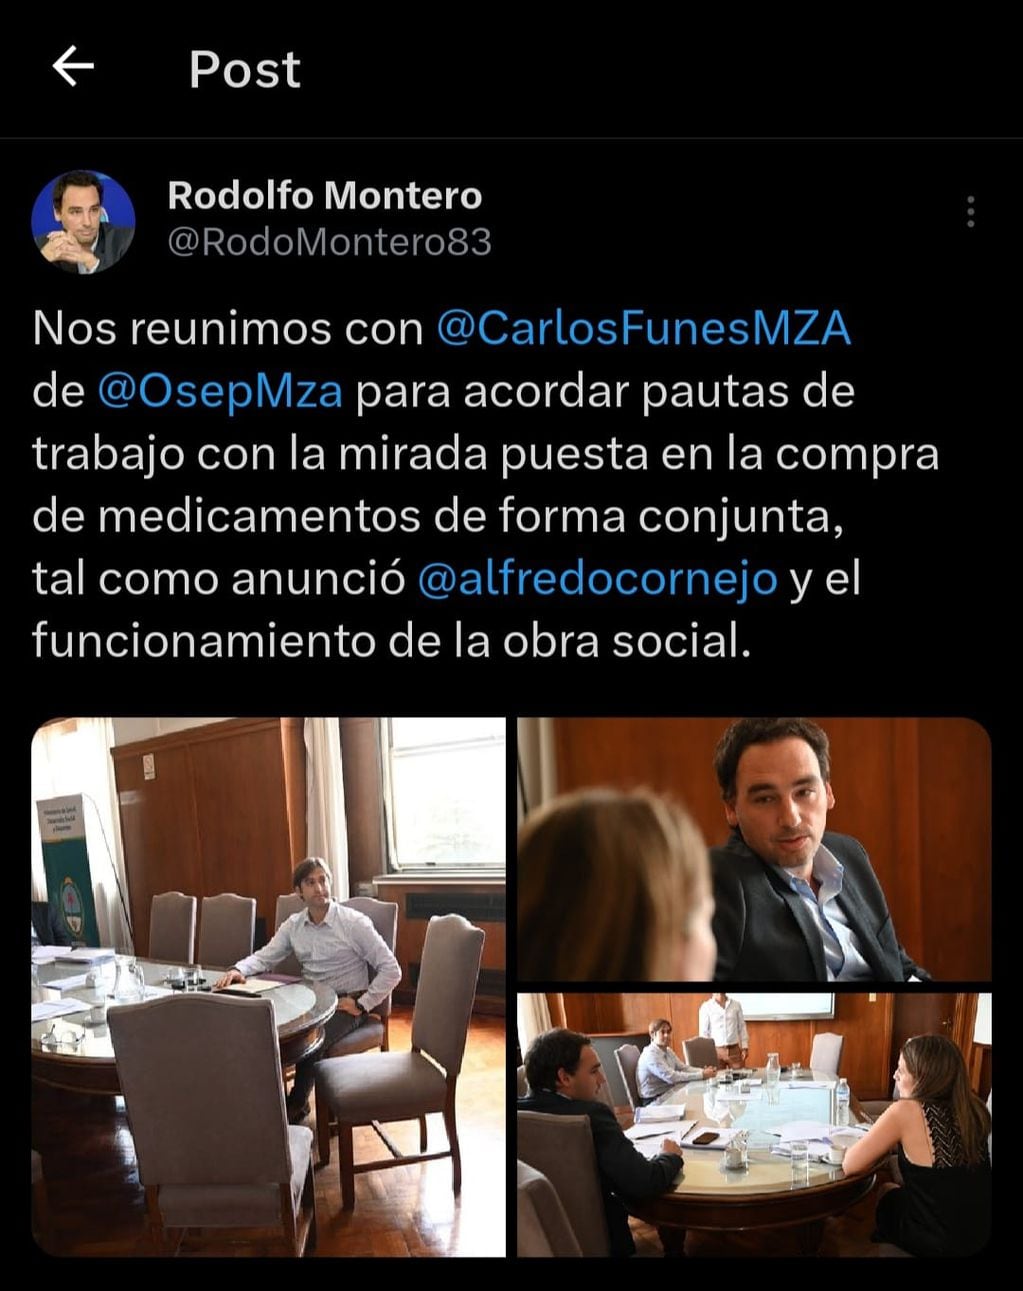 Posteo en X del Ministro de Salud, Rodolfo Montero